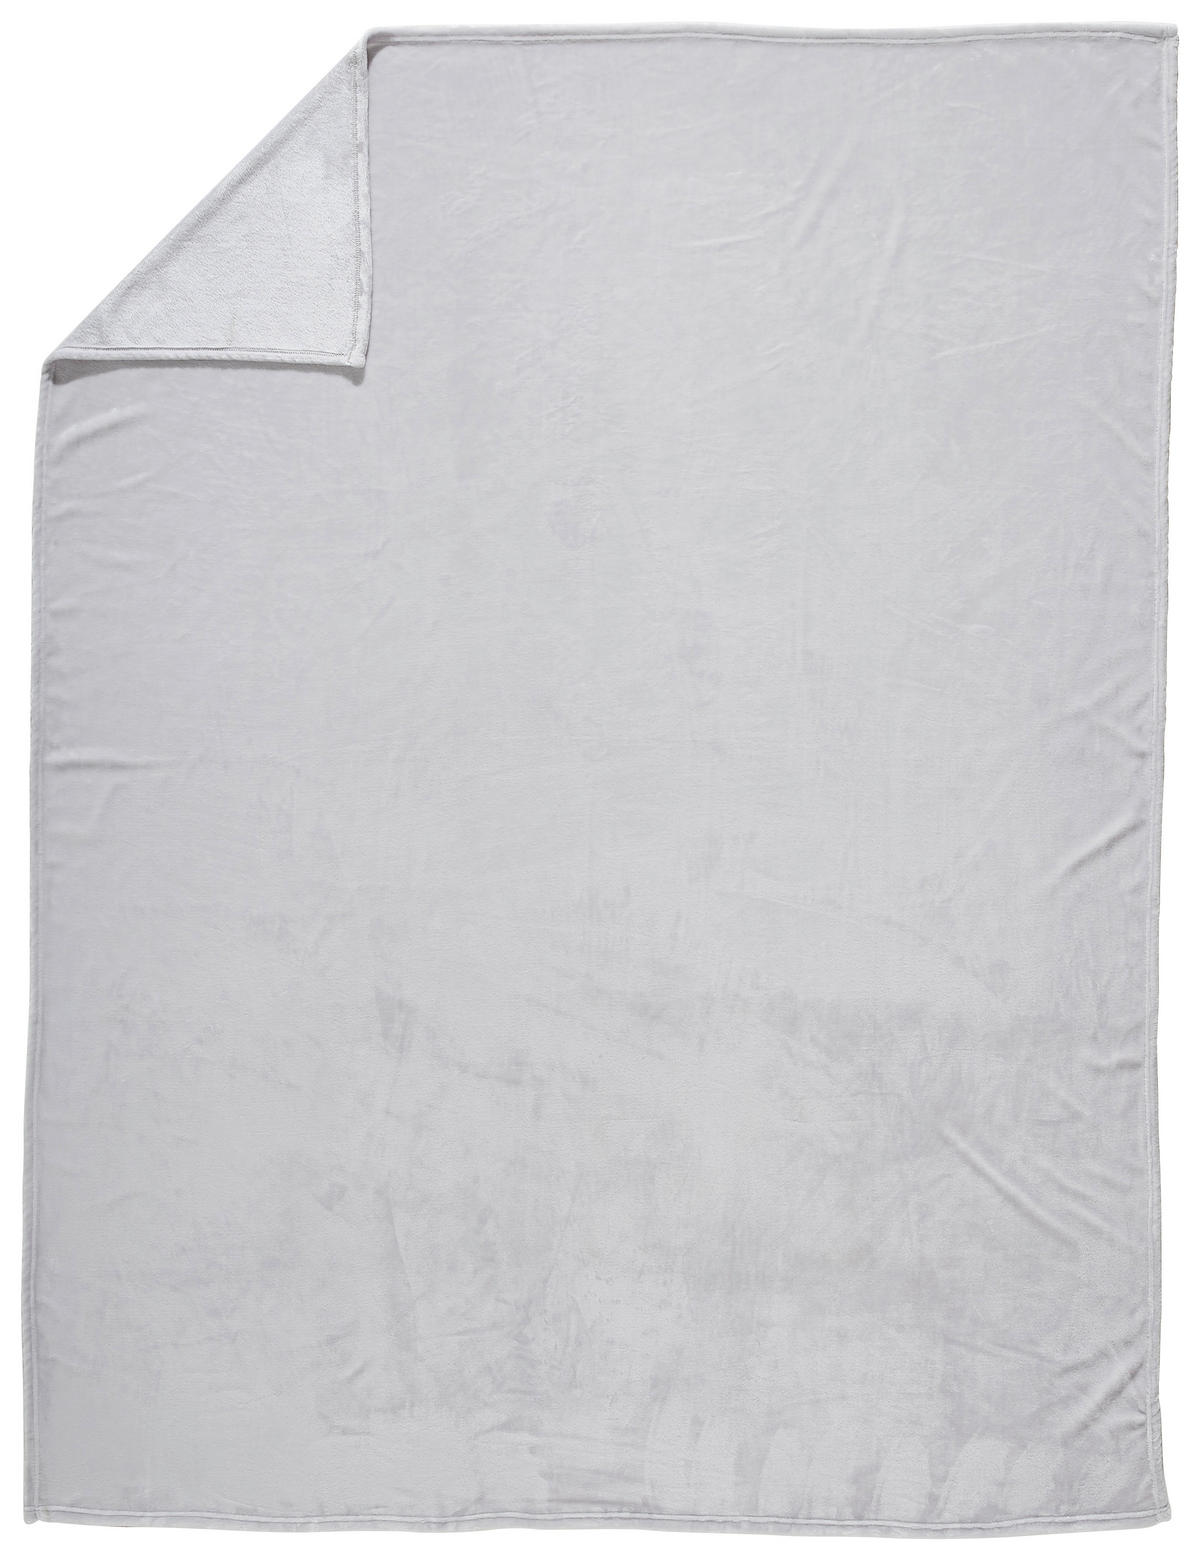 Wohndecke 140x190 cm aus Polyester in Silberfarben